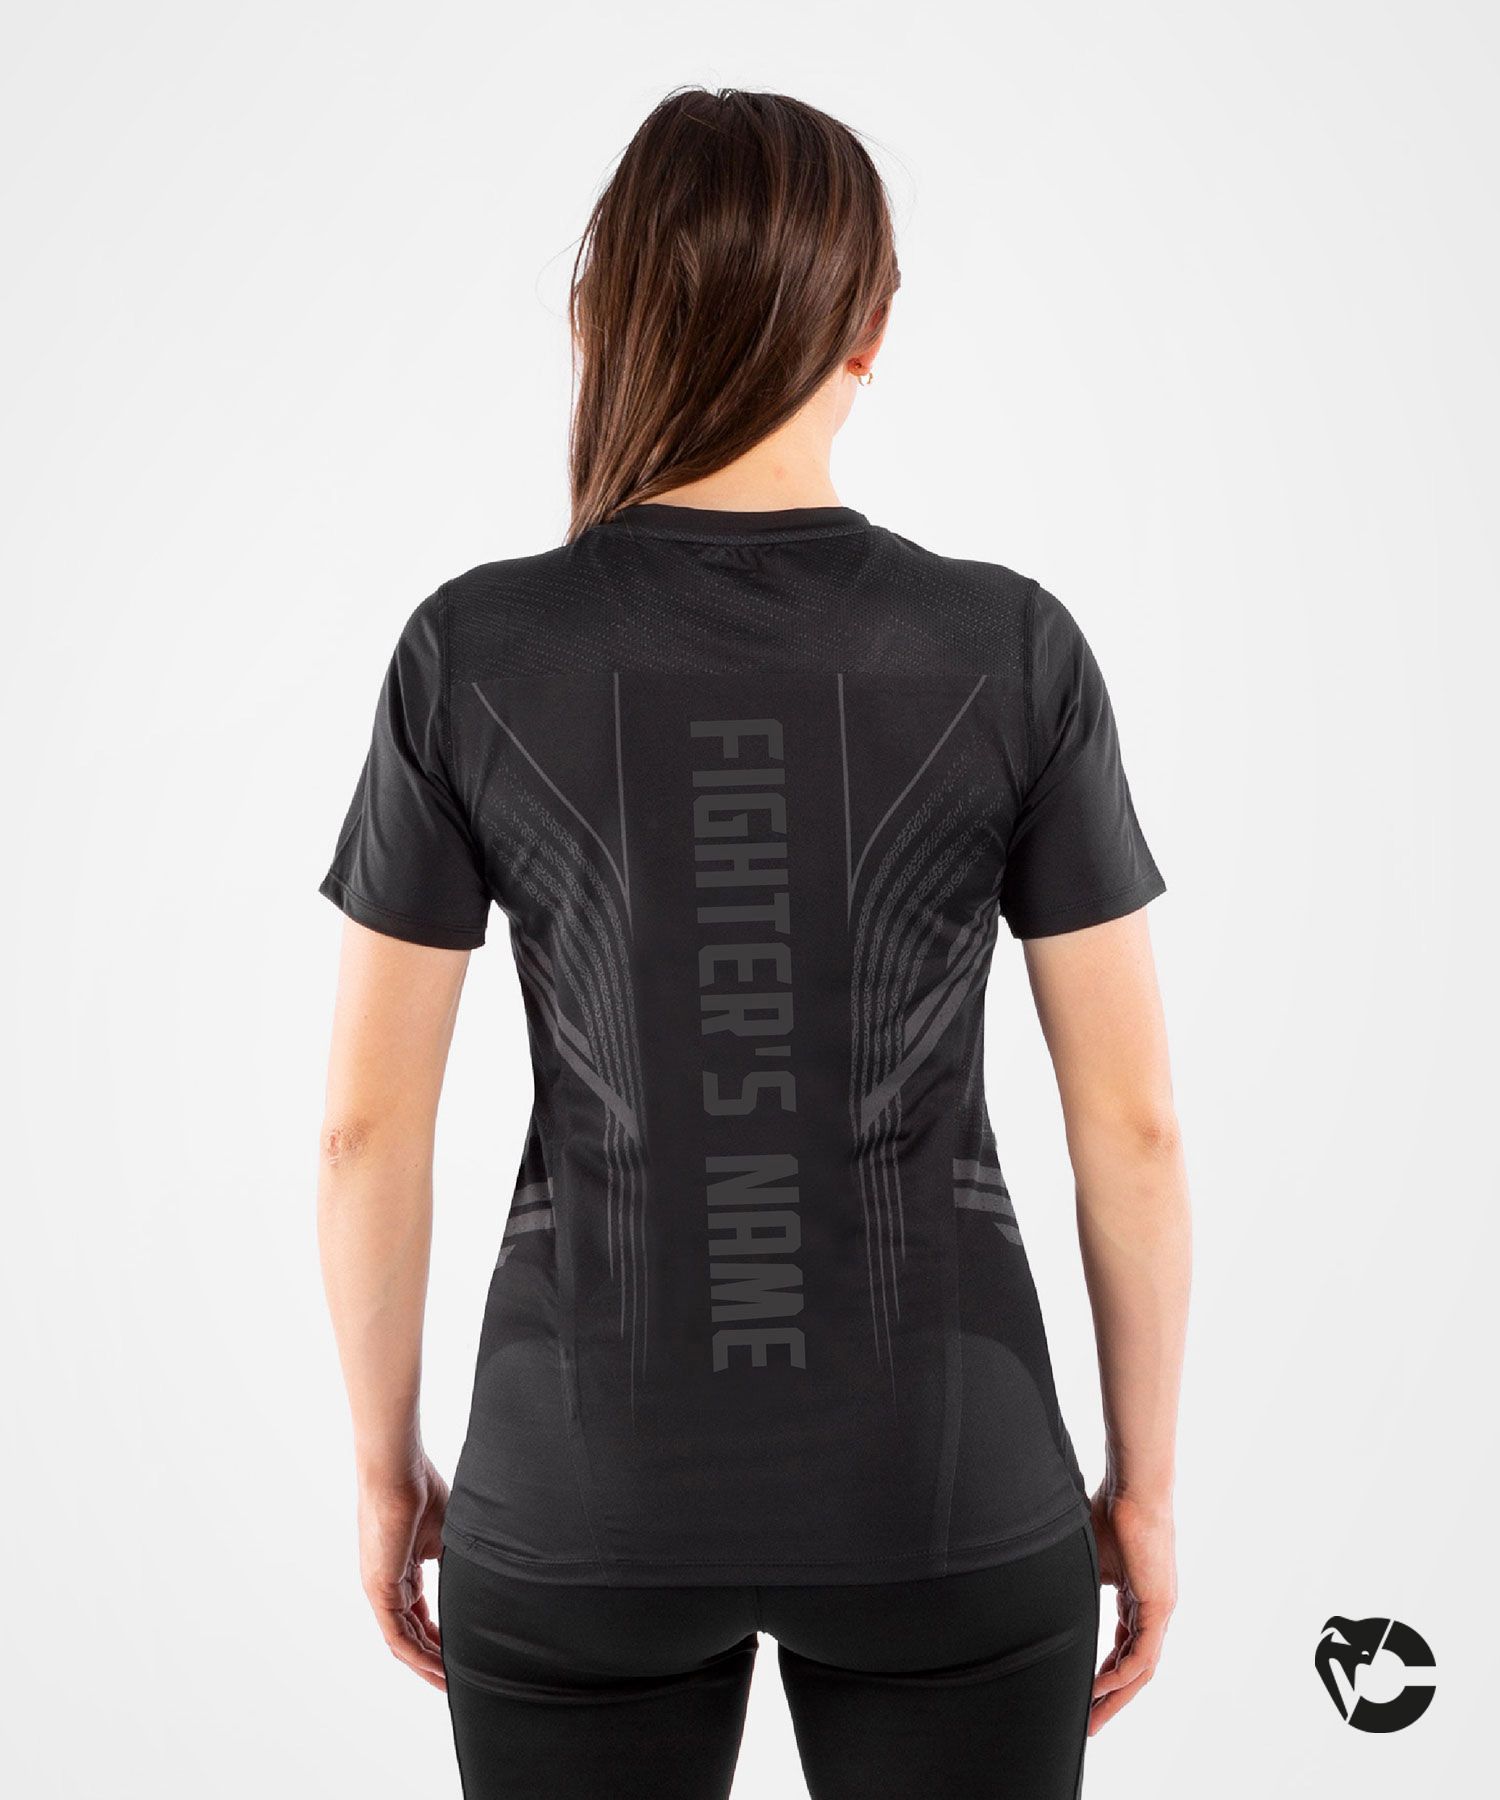 T-shirt Technique Femme Fighters UFC Venum Authentic Fight Night - Noir